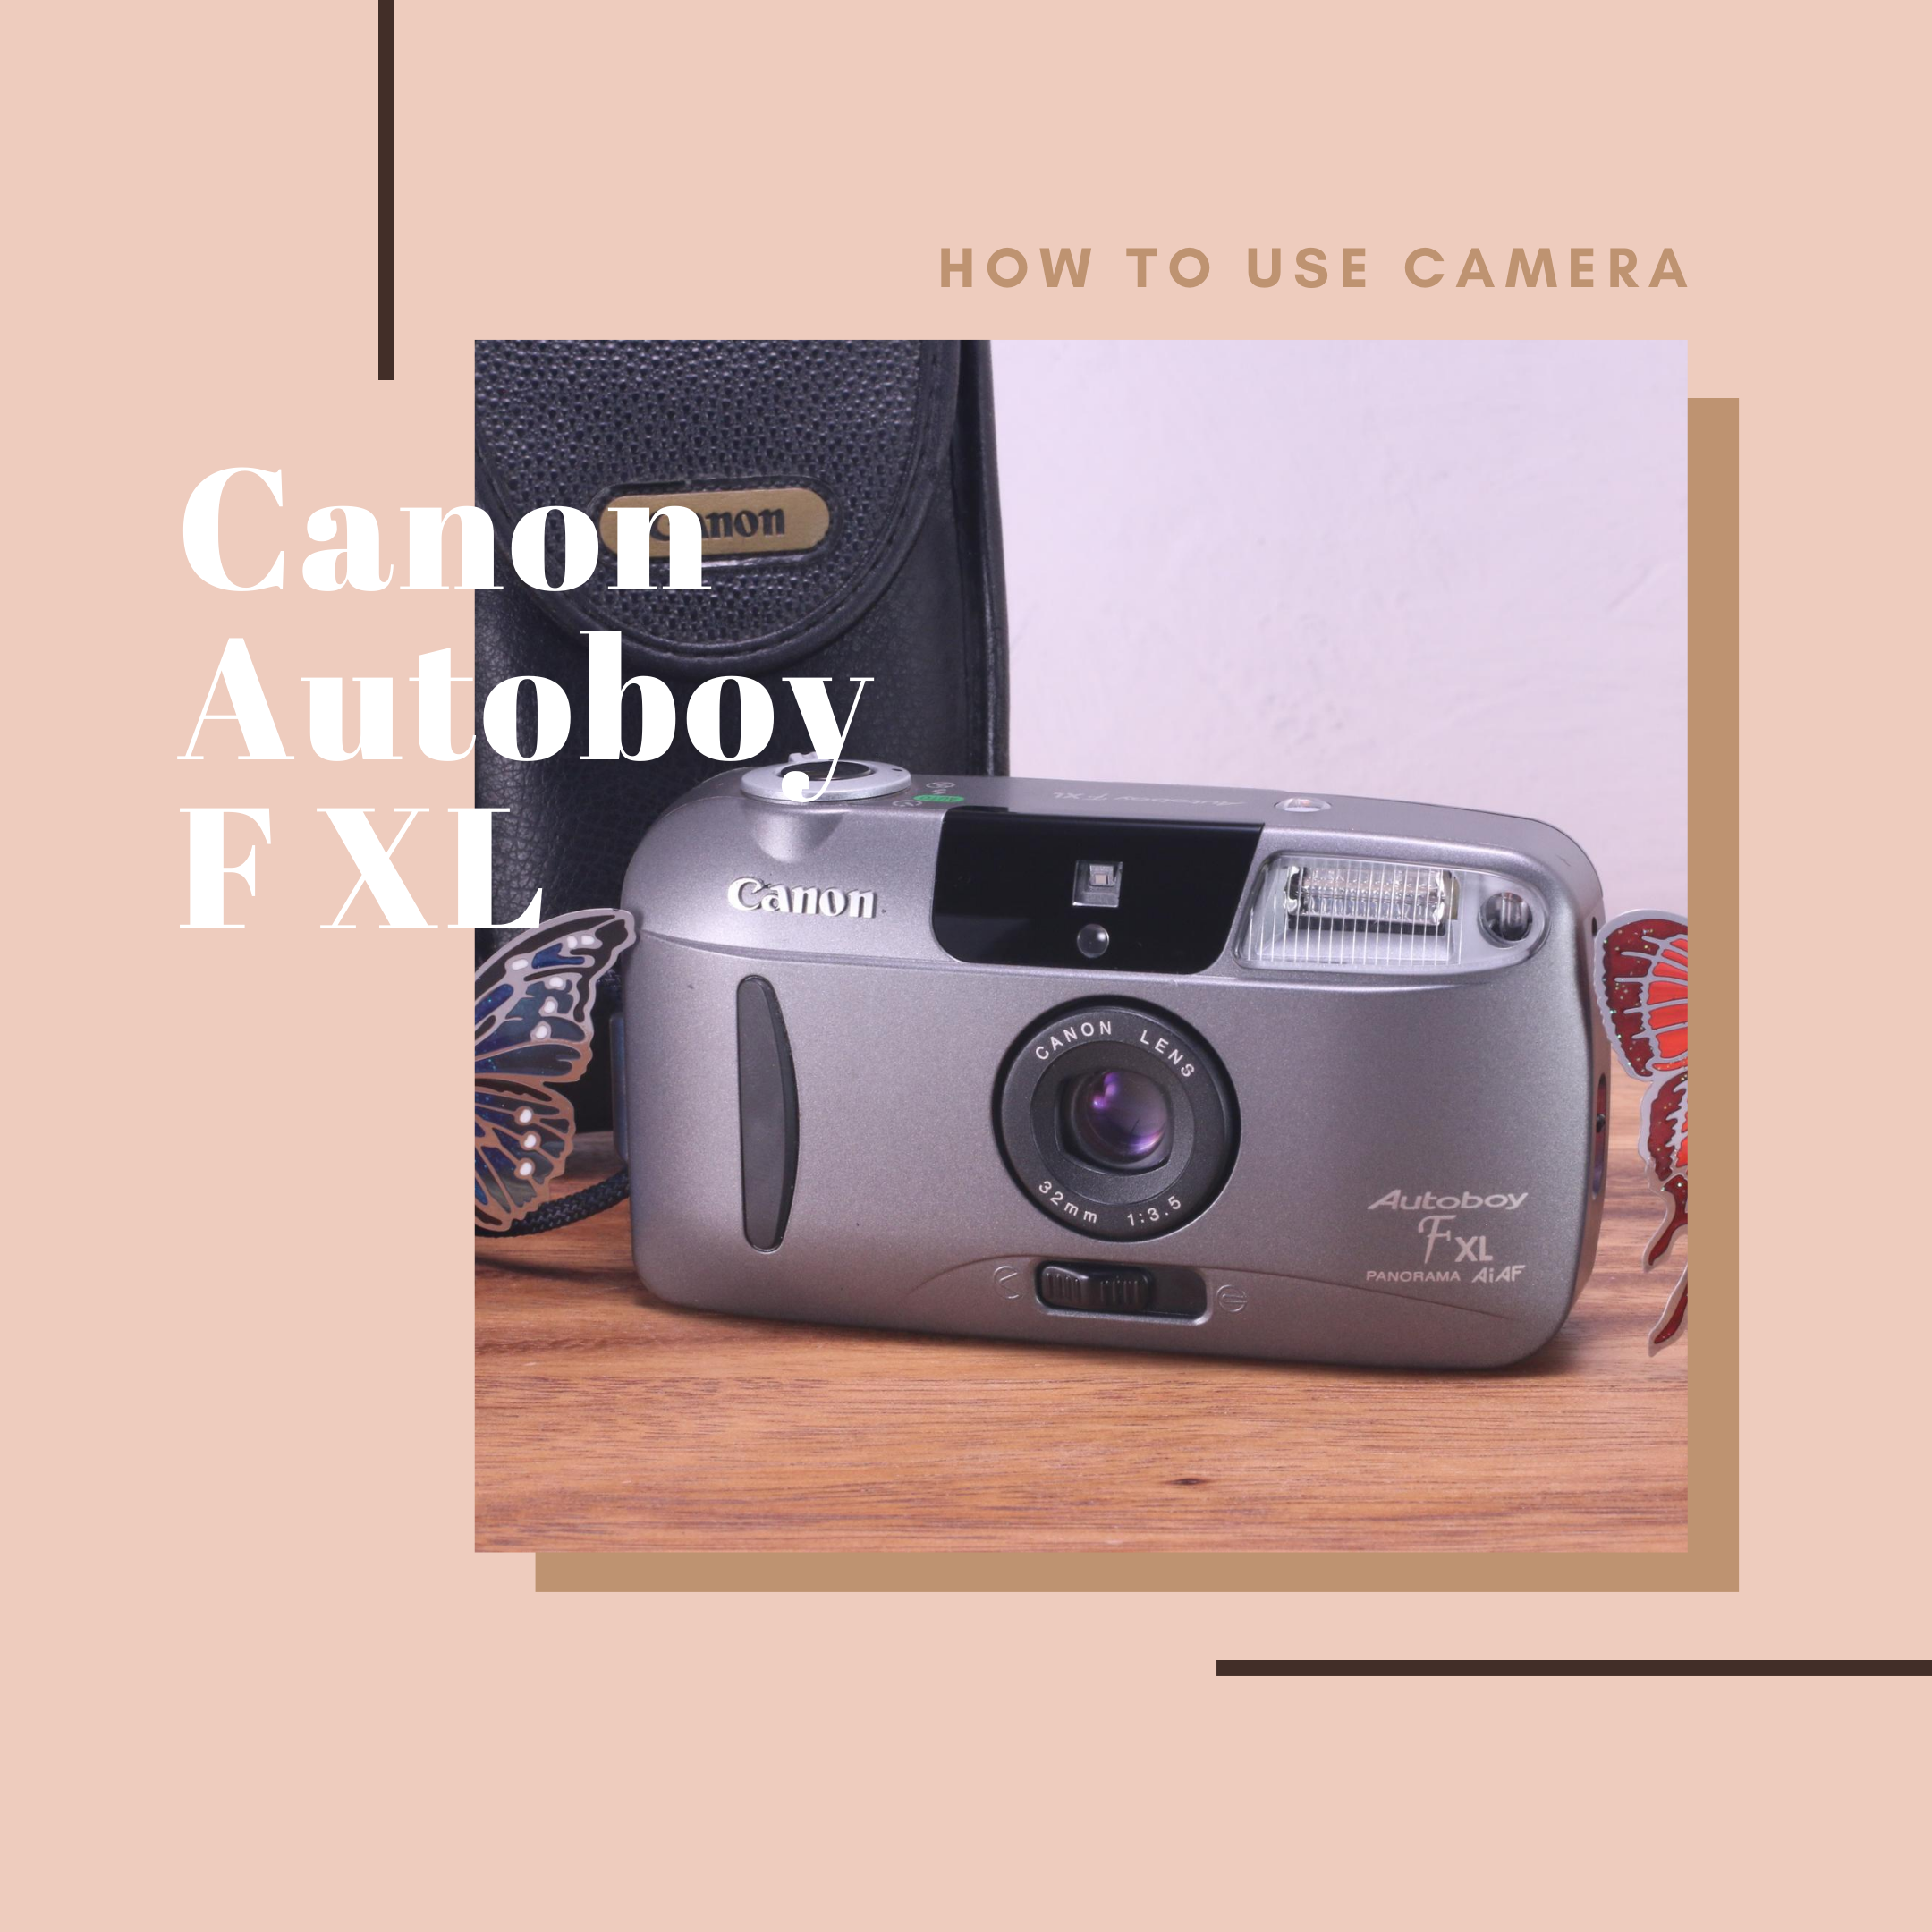 Canon Autoboy F XL の使い方 | Totte Me Camera